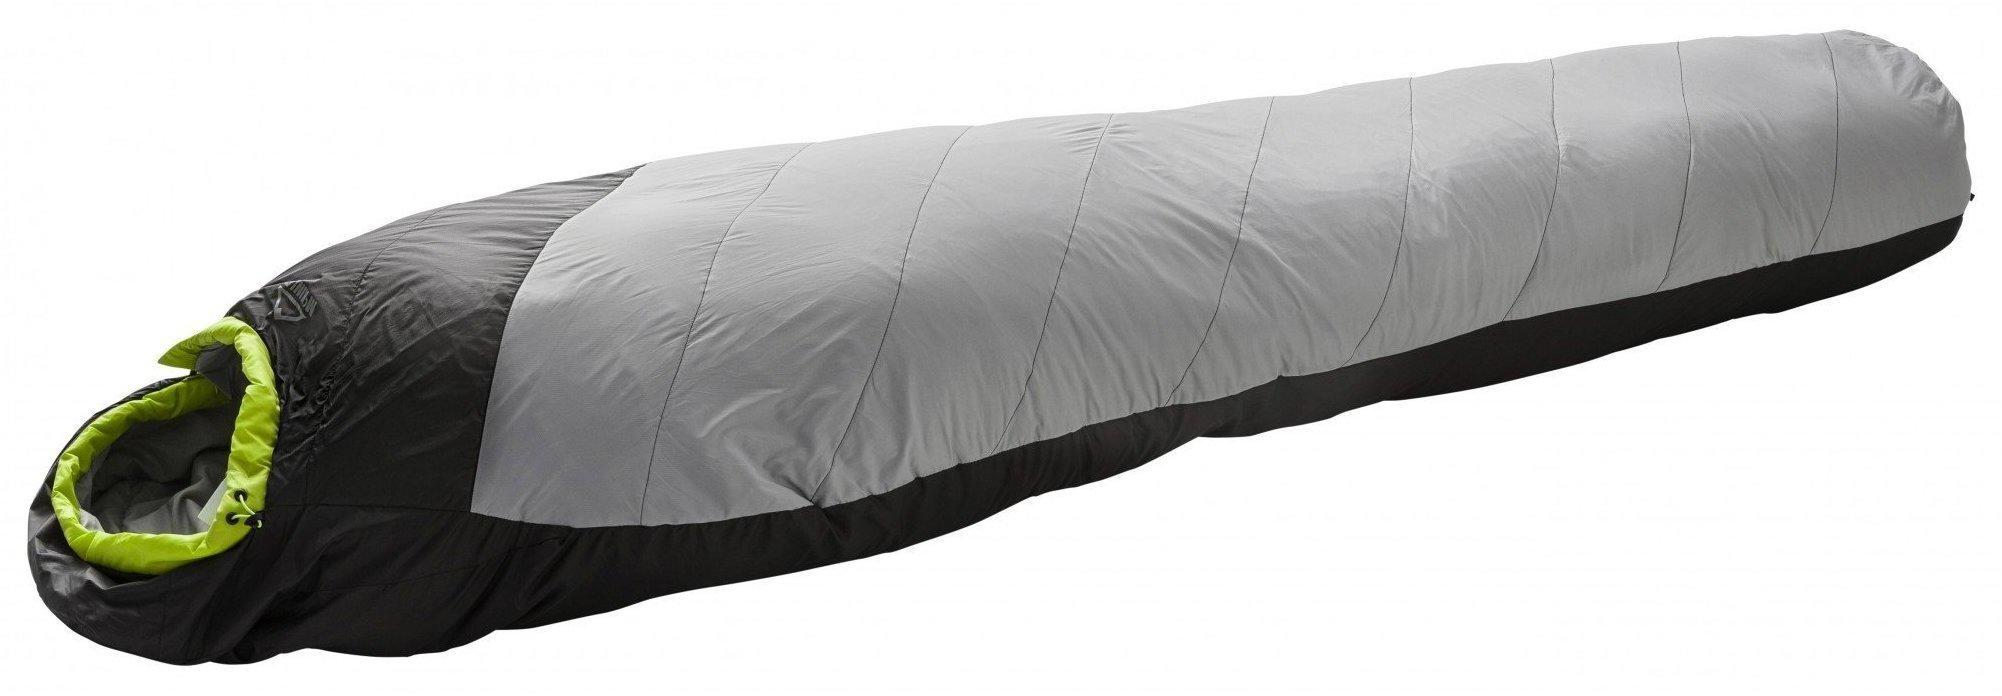 McKINLEY Decken-Schlafsack Camp Comfort 0 grau orange Körpergröße von ca.195cm 